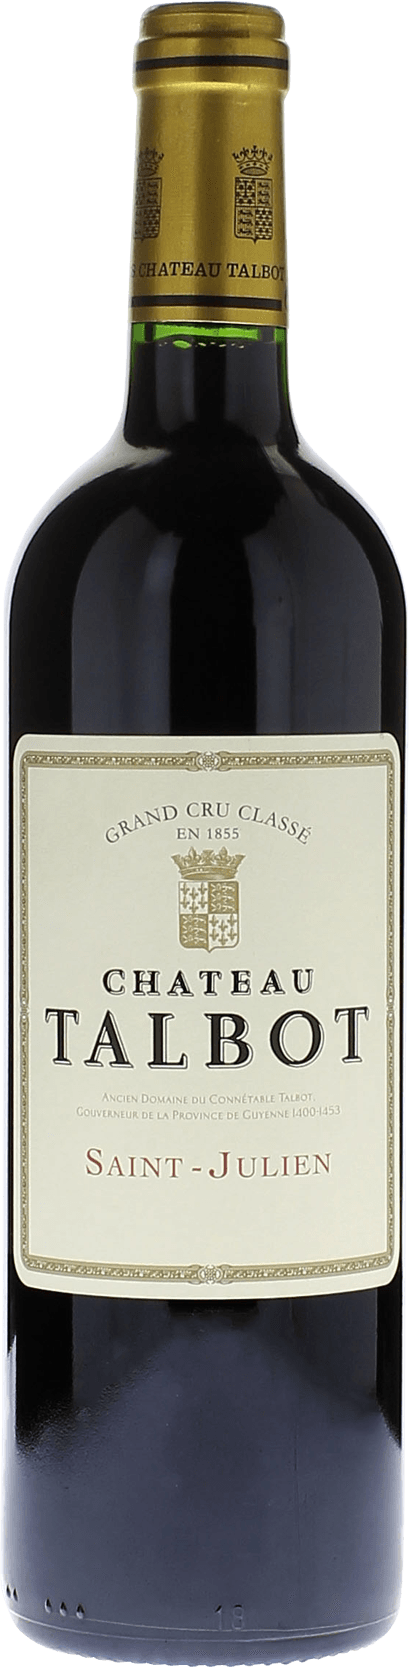 Talbot 1984 4me Grand cru class Saint-Julien, Bordeaux rouge